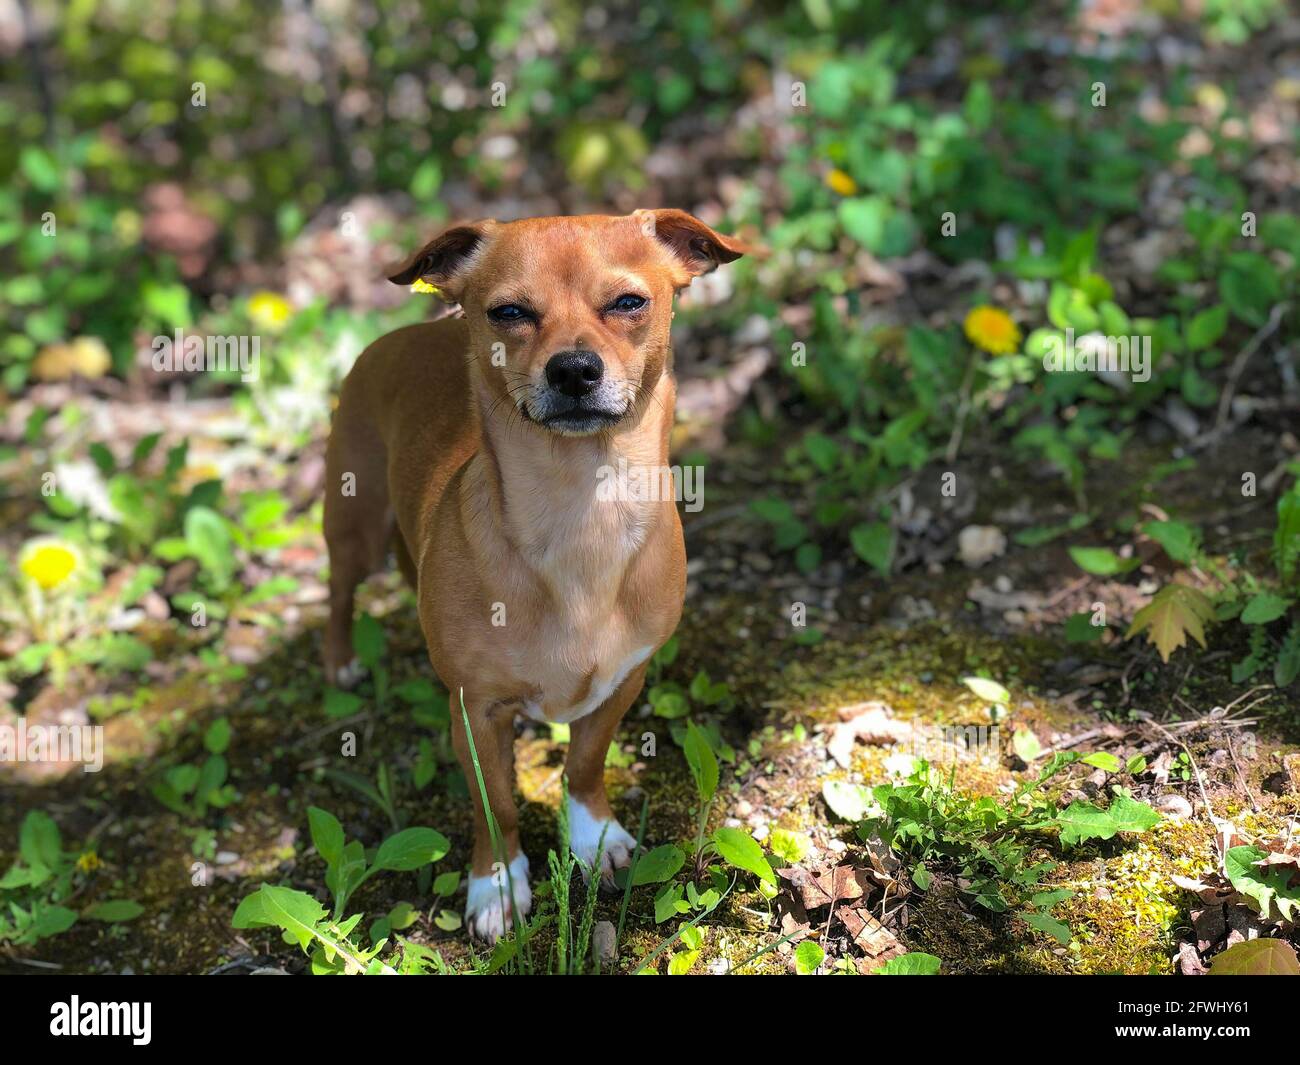 Chiweenie, un chihuahua y dachshund mezclan perro al aire libre entre la hierba y los dientes de león durante la primavera Foto de stock